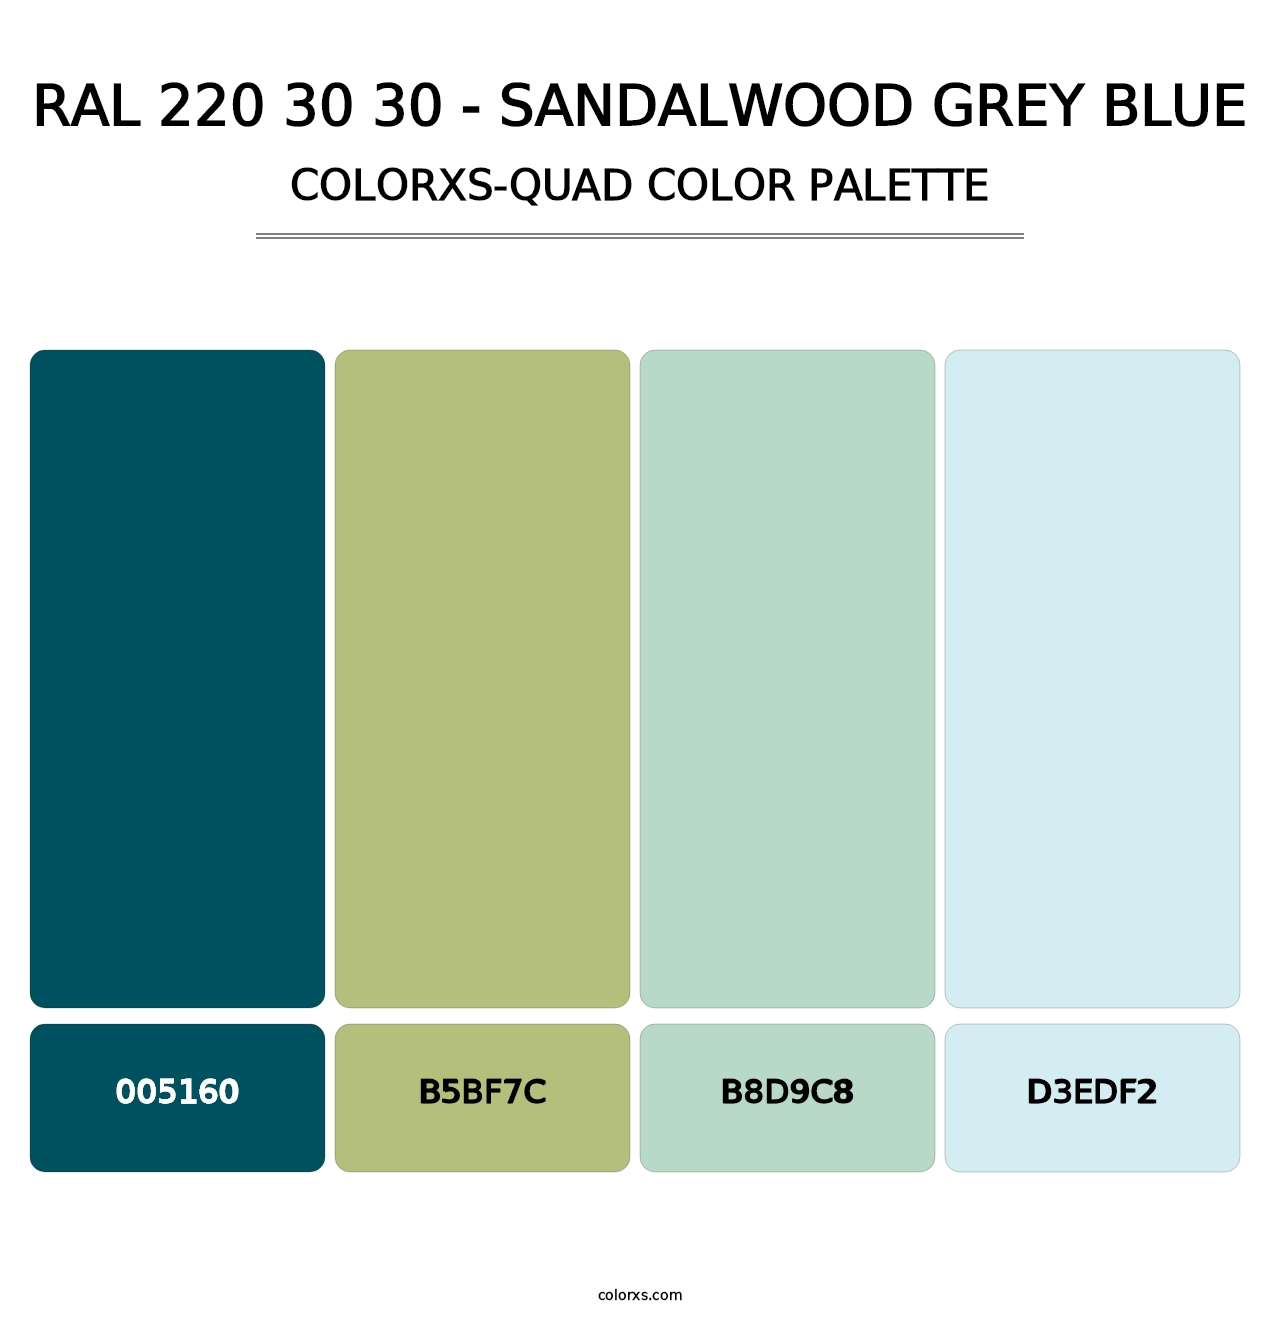 RAL 220 30 30 - Sandalwood Grey Blue - Colorxs Quad Palette